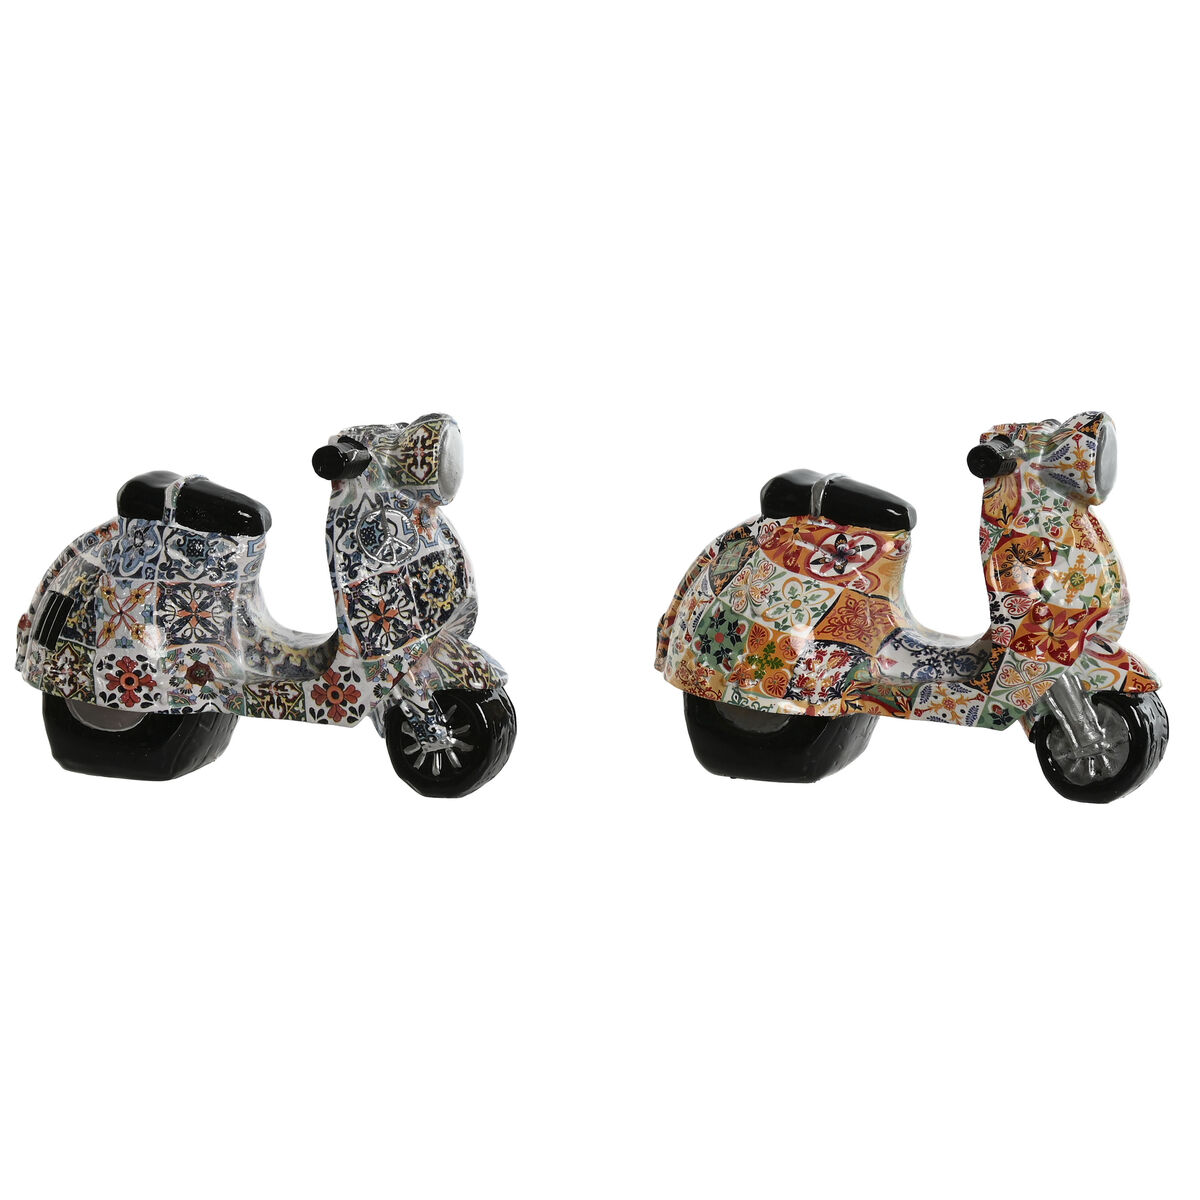 Dekoratívne postava Home ESPRIT Viacfarebná Stredozemný scooter 14 x 8 x 11 cm (2 kusov)